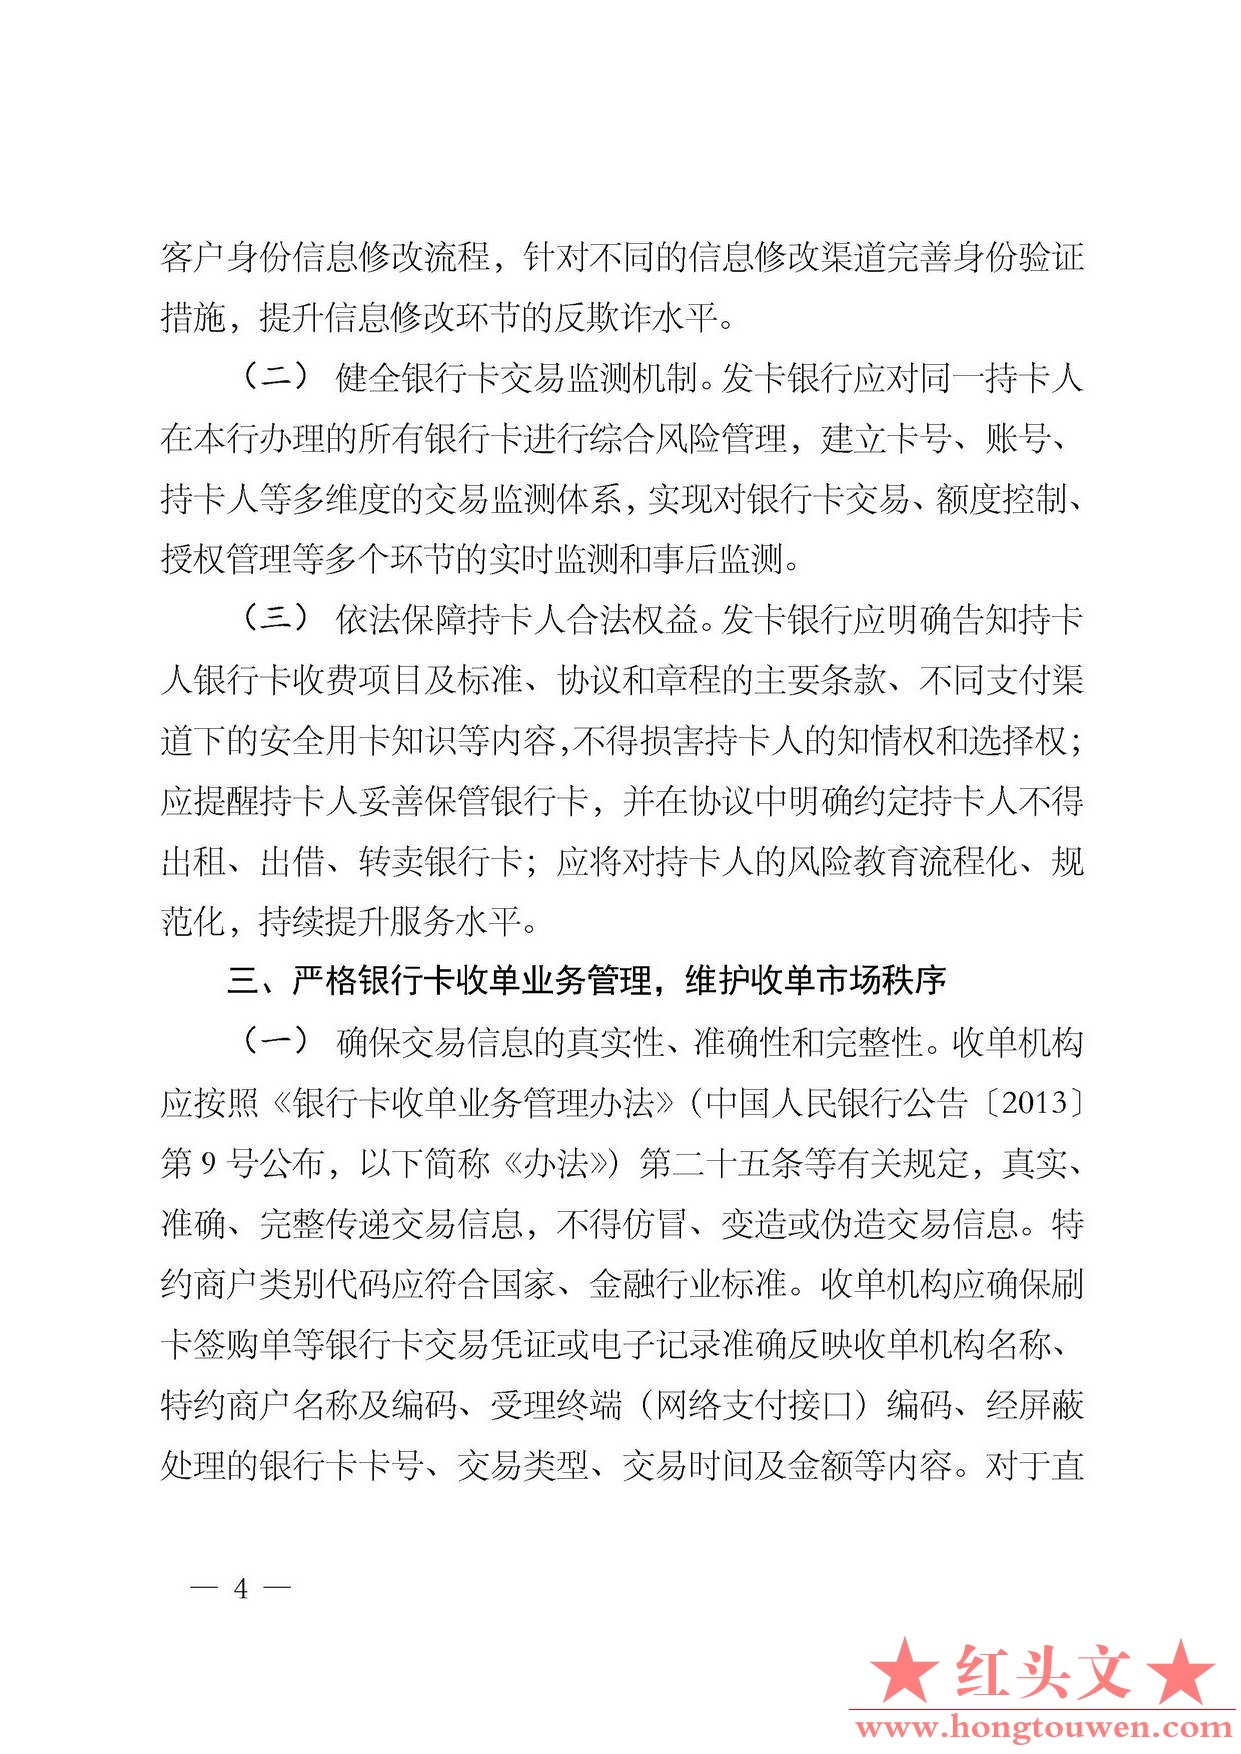 银发[2014]5号-中国人民银行关于加强银行卡业务管理的通知_页面_4.jpg